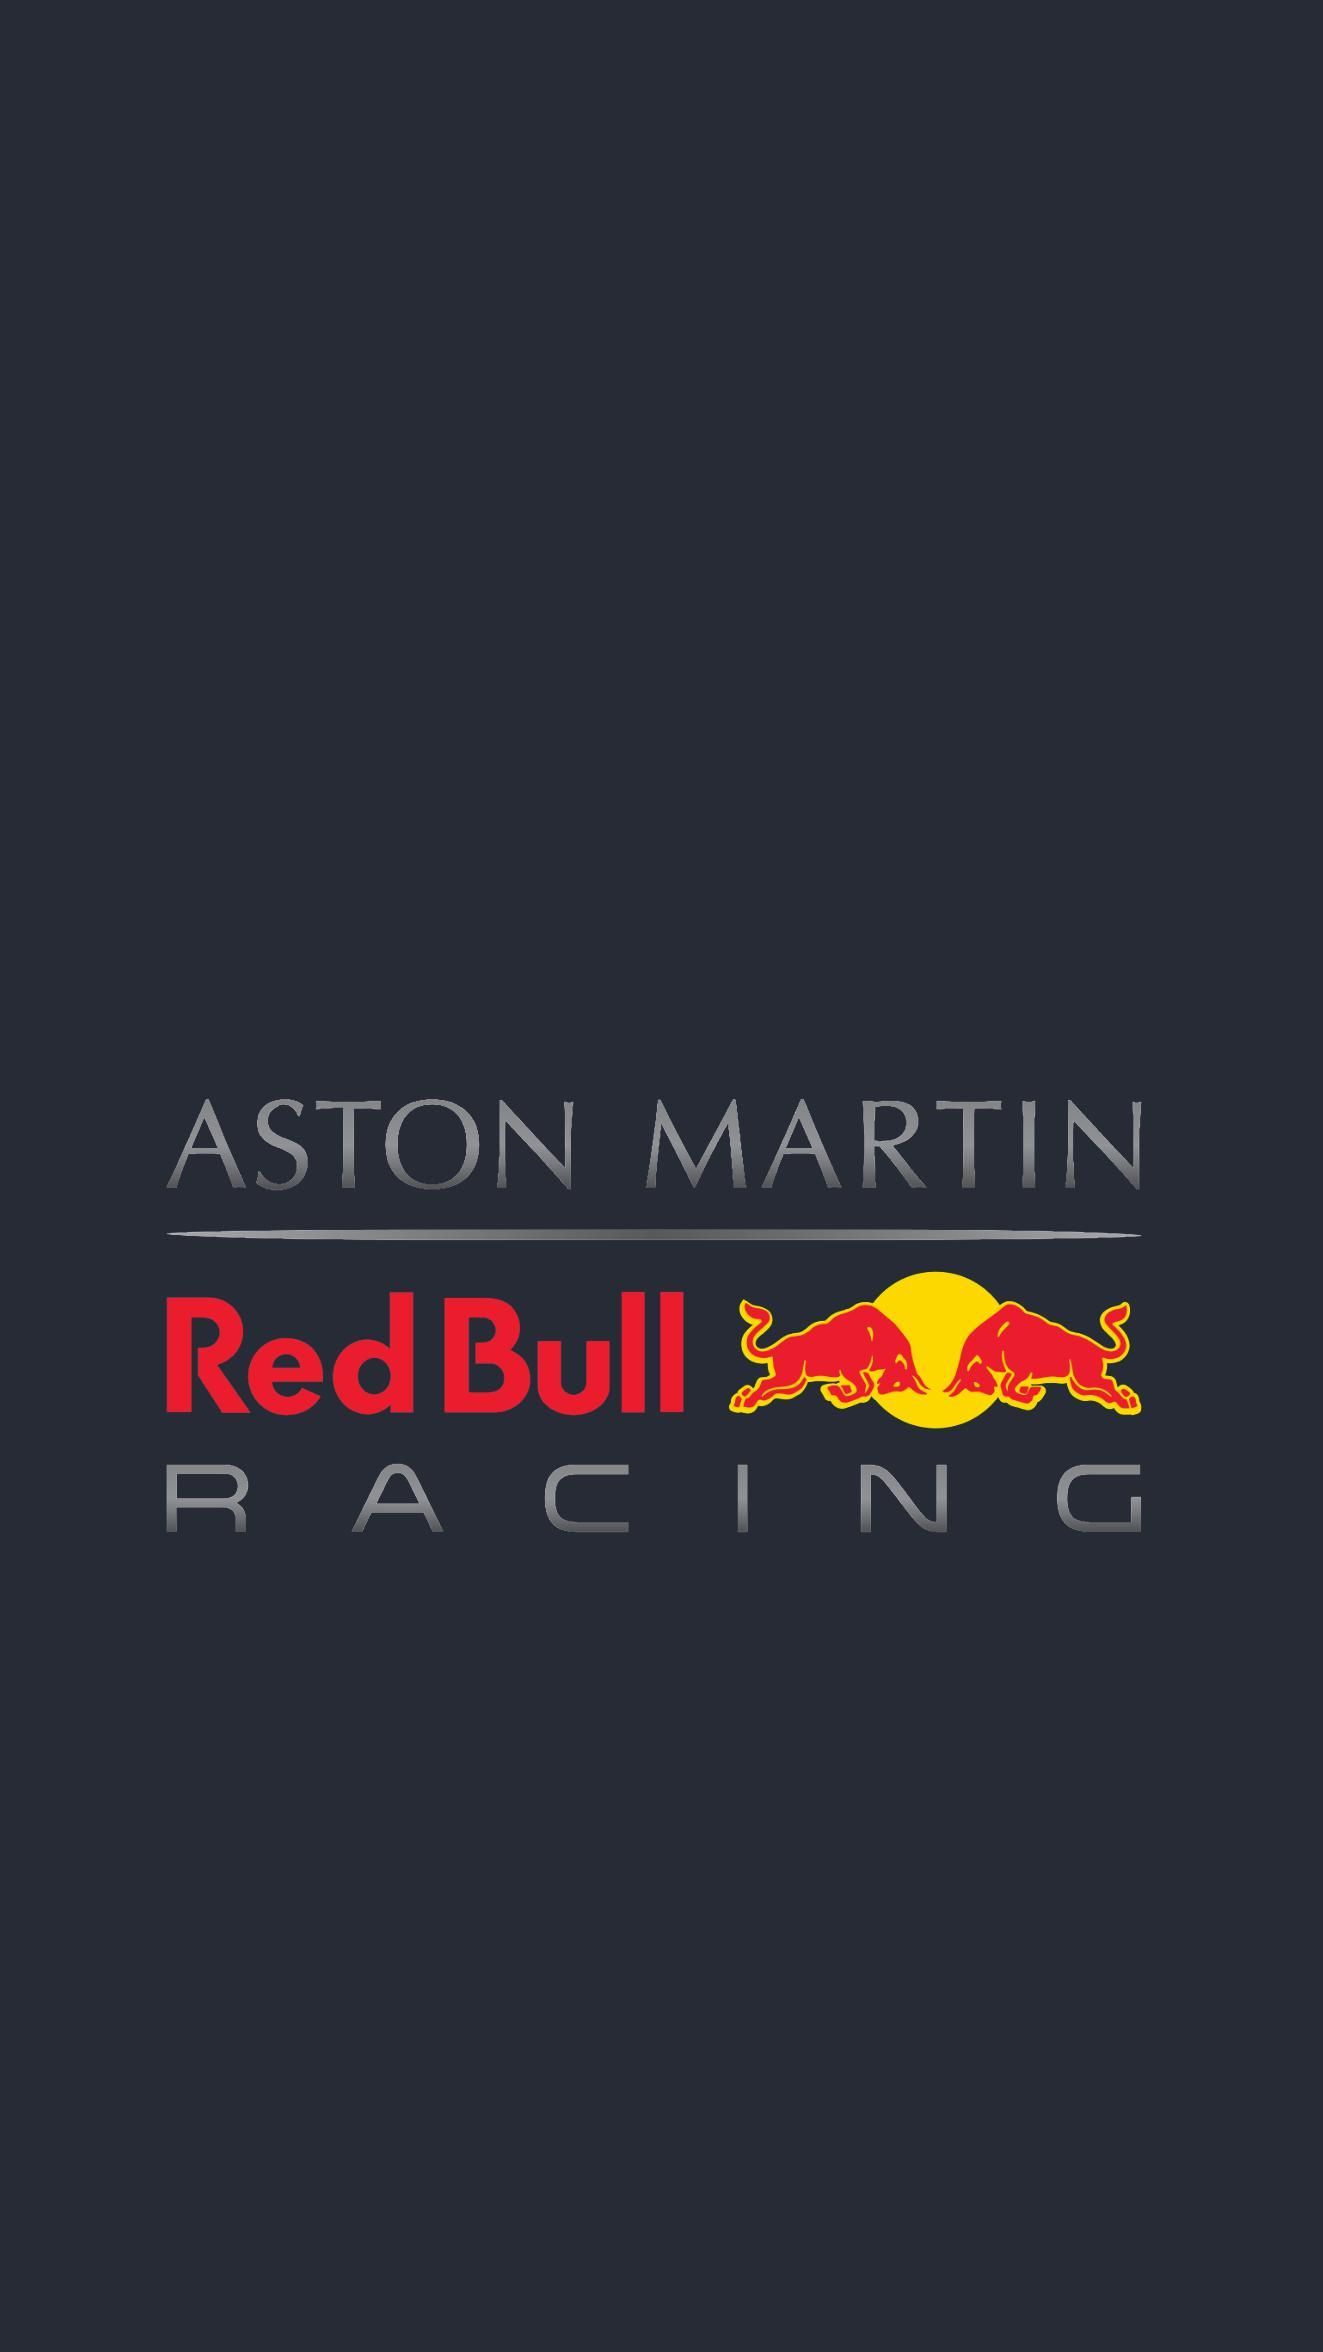 Aston Martin Red Bull Racing wallpaper color. Fondo de pantalla